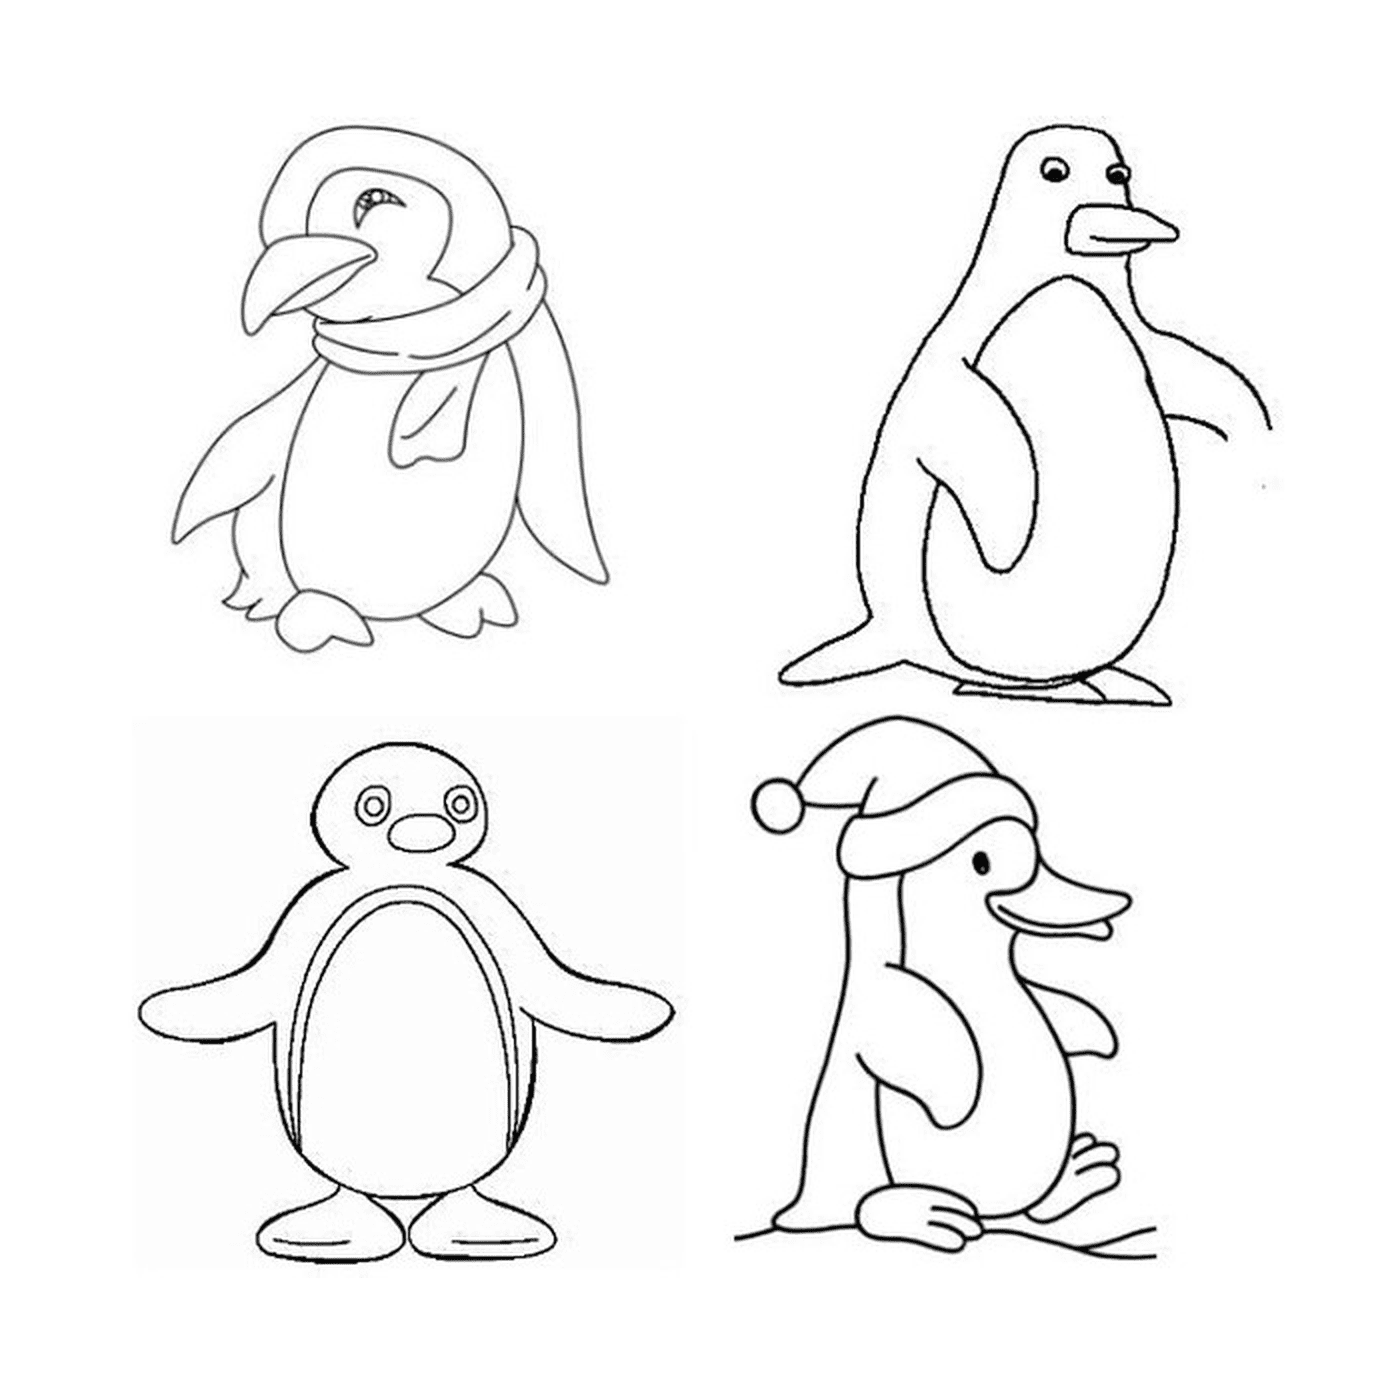  Vier verschiedene Pinguine in der Zeichnung 